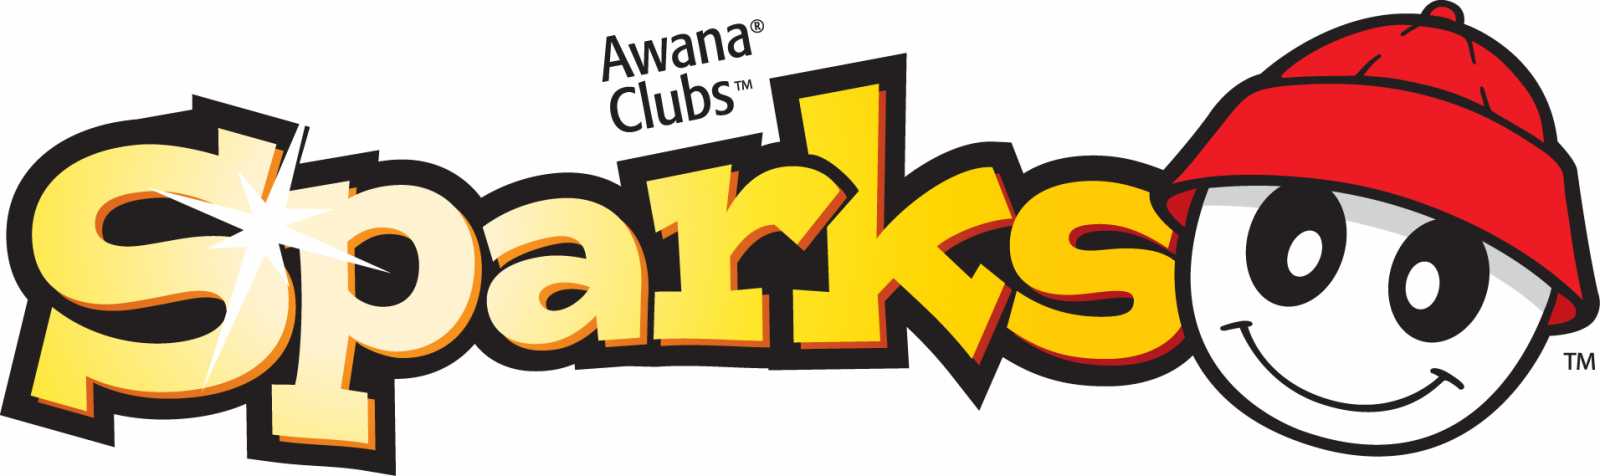 Awana sparks clipart